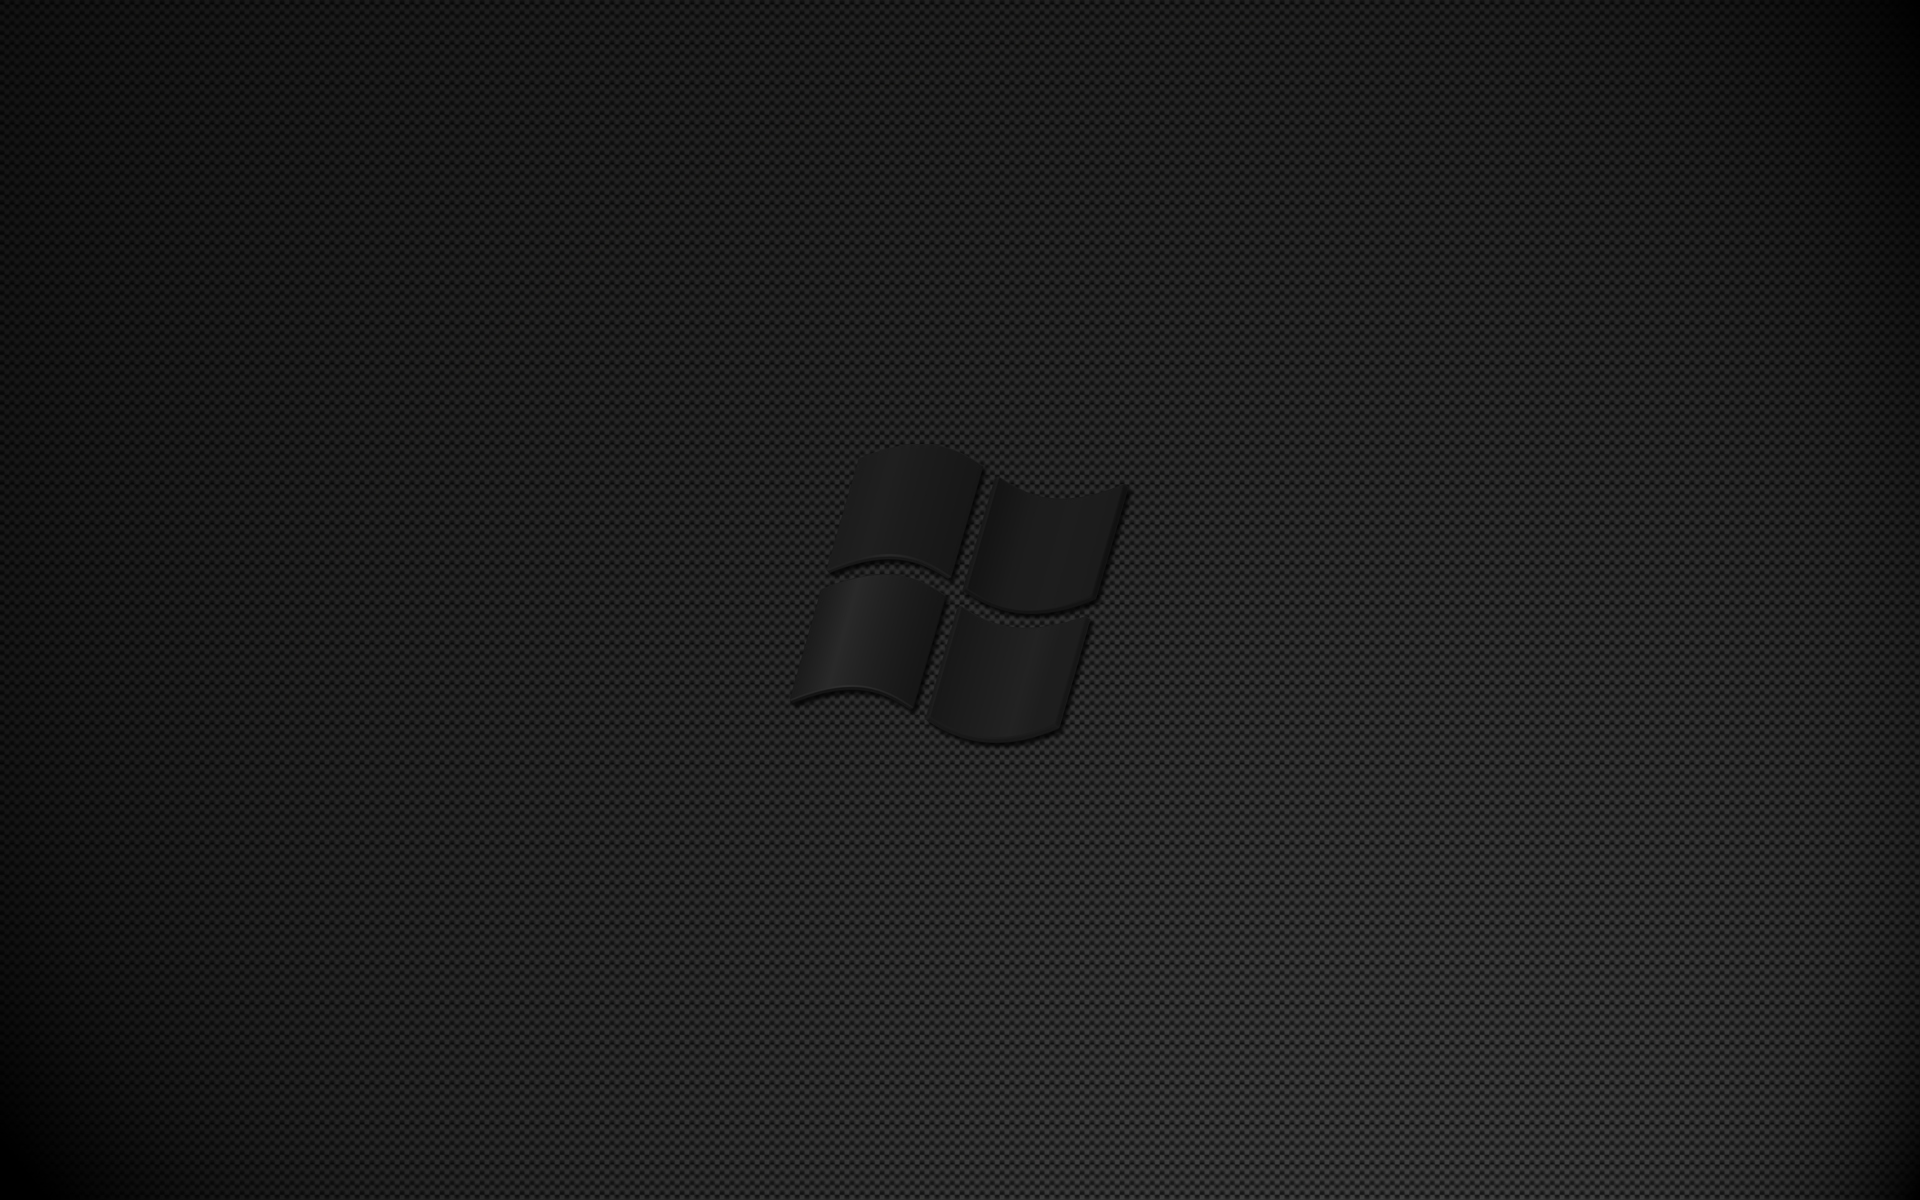 Hình nền đen Windows 10 sẽ khiến cho màn hình máy tính của bạn thật khác biệt và thú vị hơn. Để biết thêm chi tiết và thưởng thức các hình nền đen Windows 10 thật đẹp mắt, hãy xem ảnh liên quan.